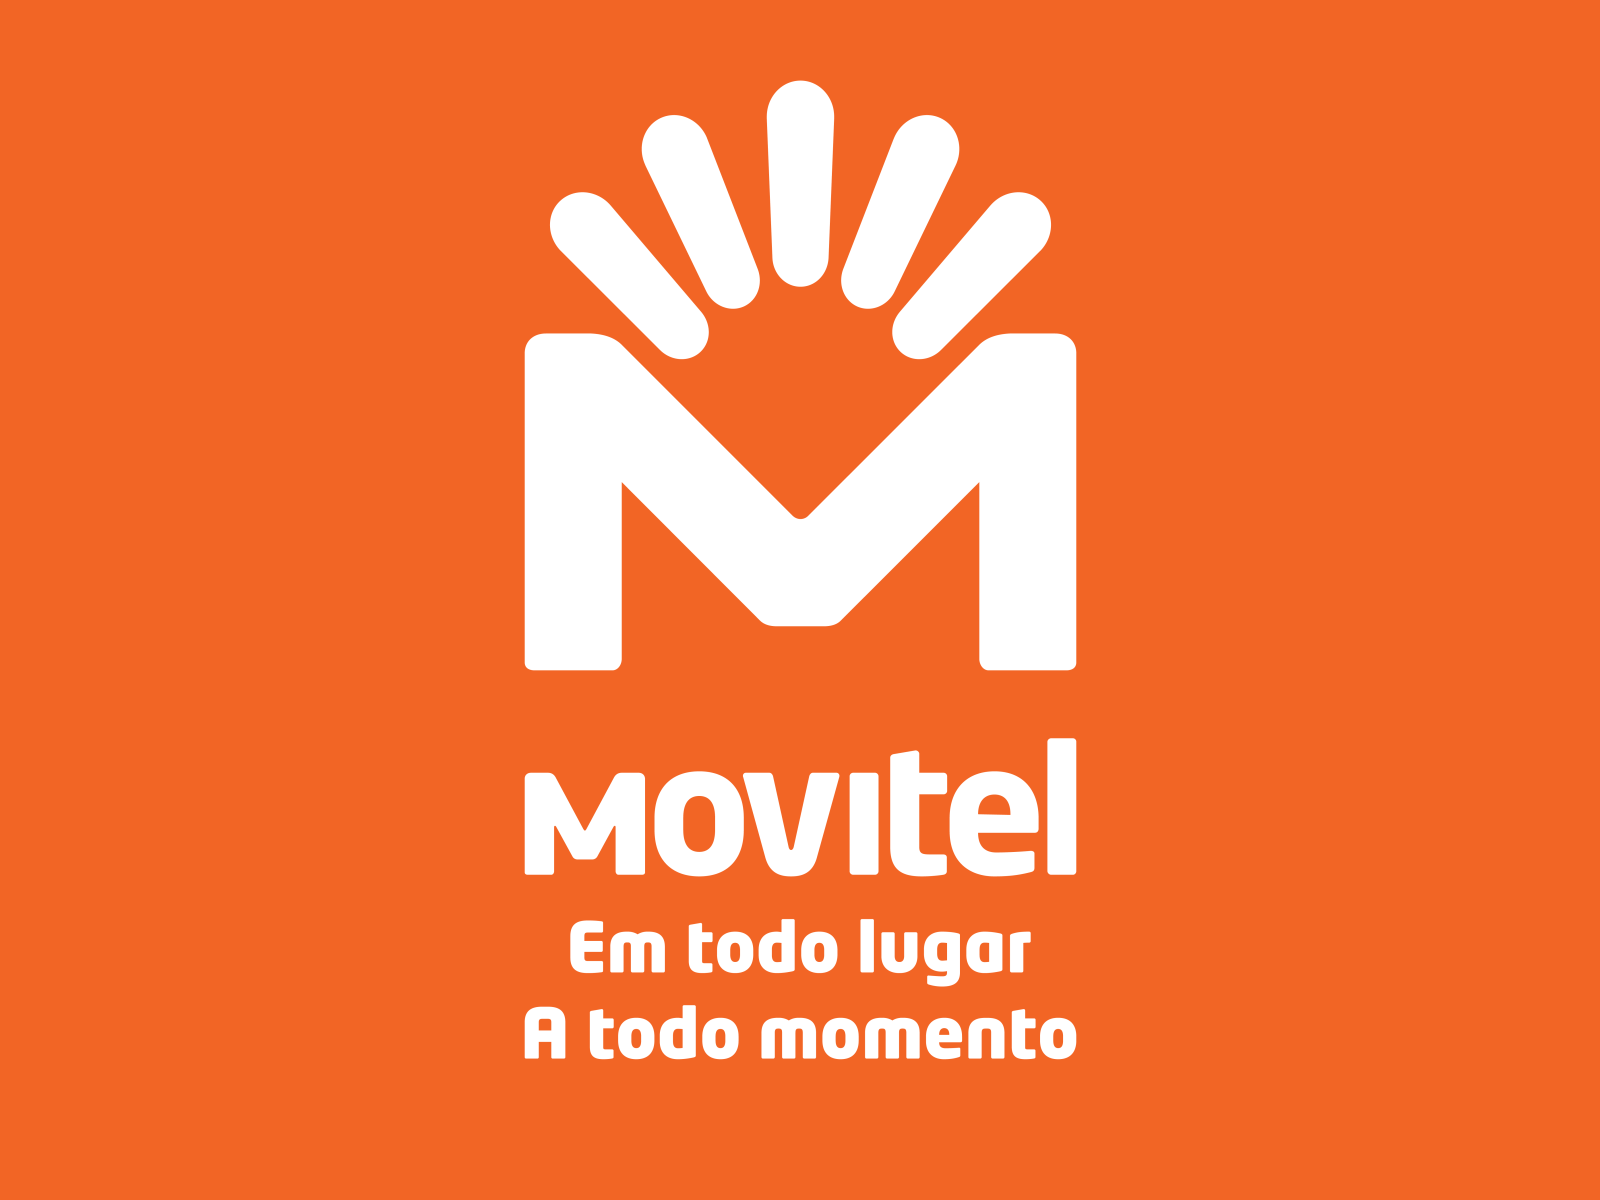 Movitel Mozambique